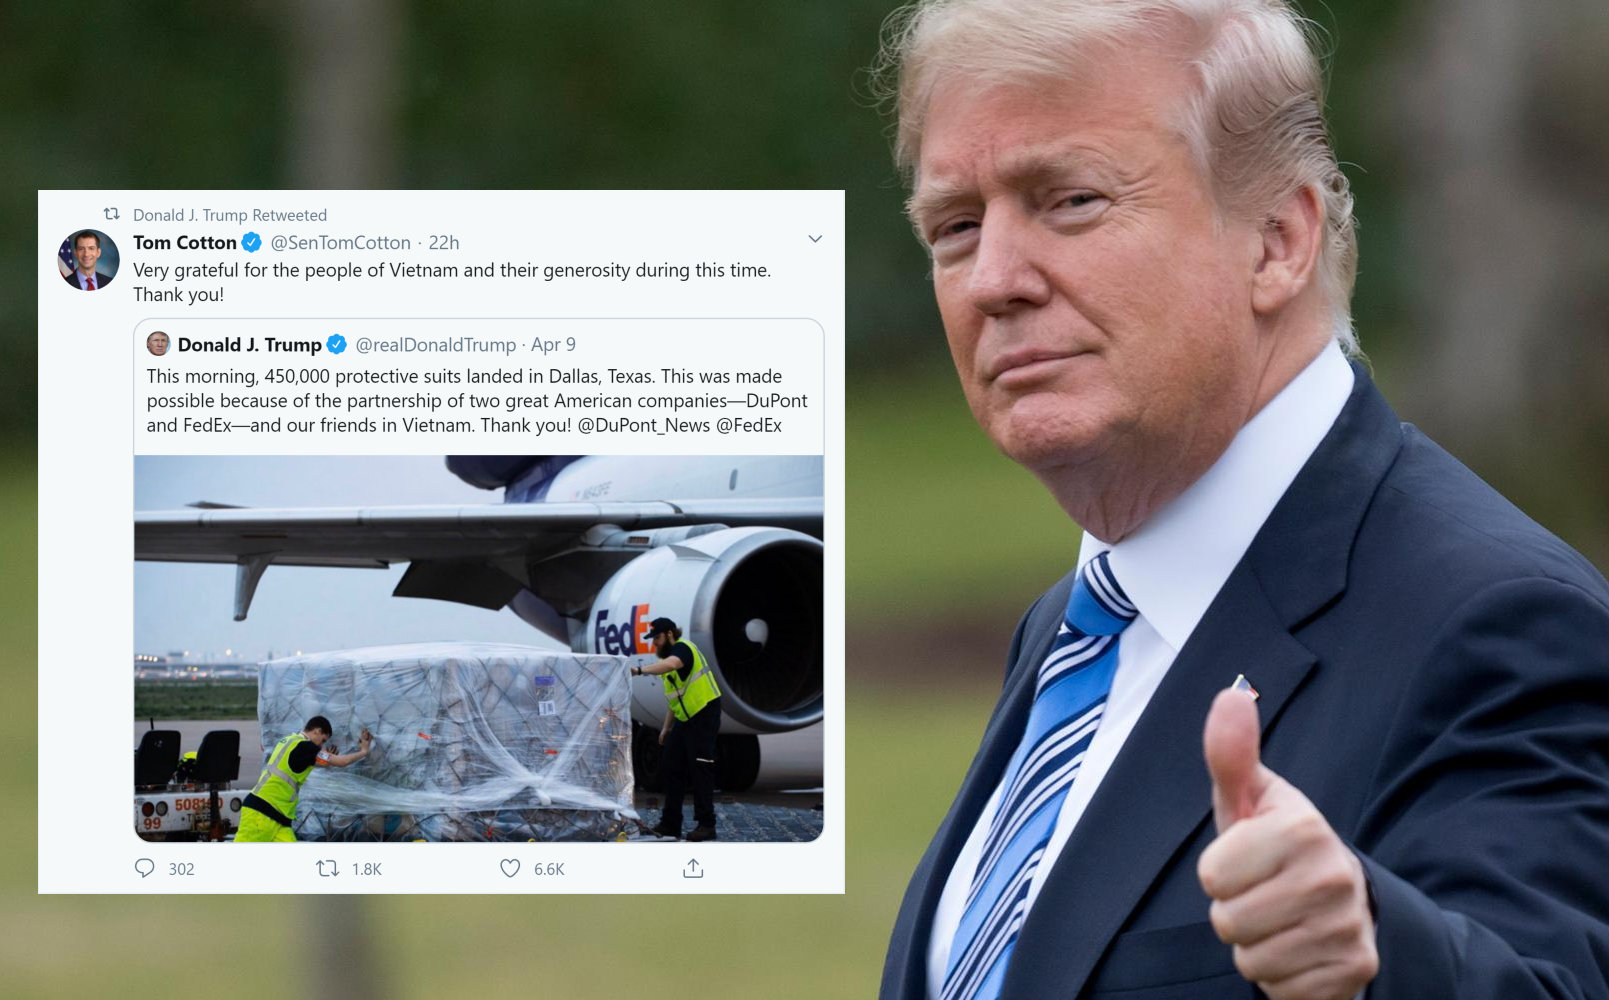 Lô hàng 450.000 bộ đồ bảo hộ: TT Trump chia sẻ dòng tweet 